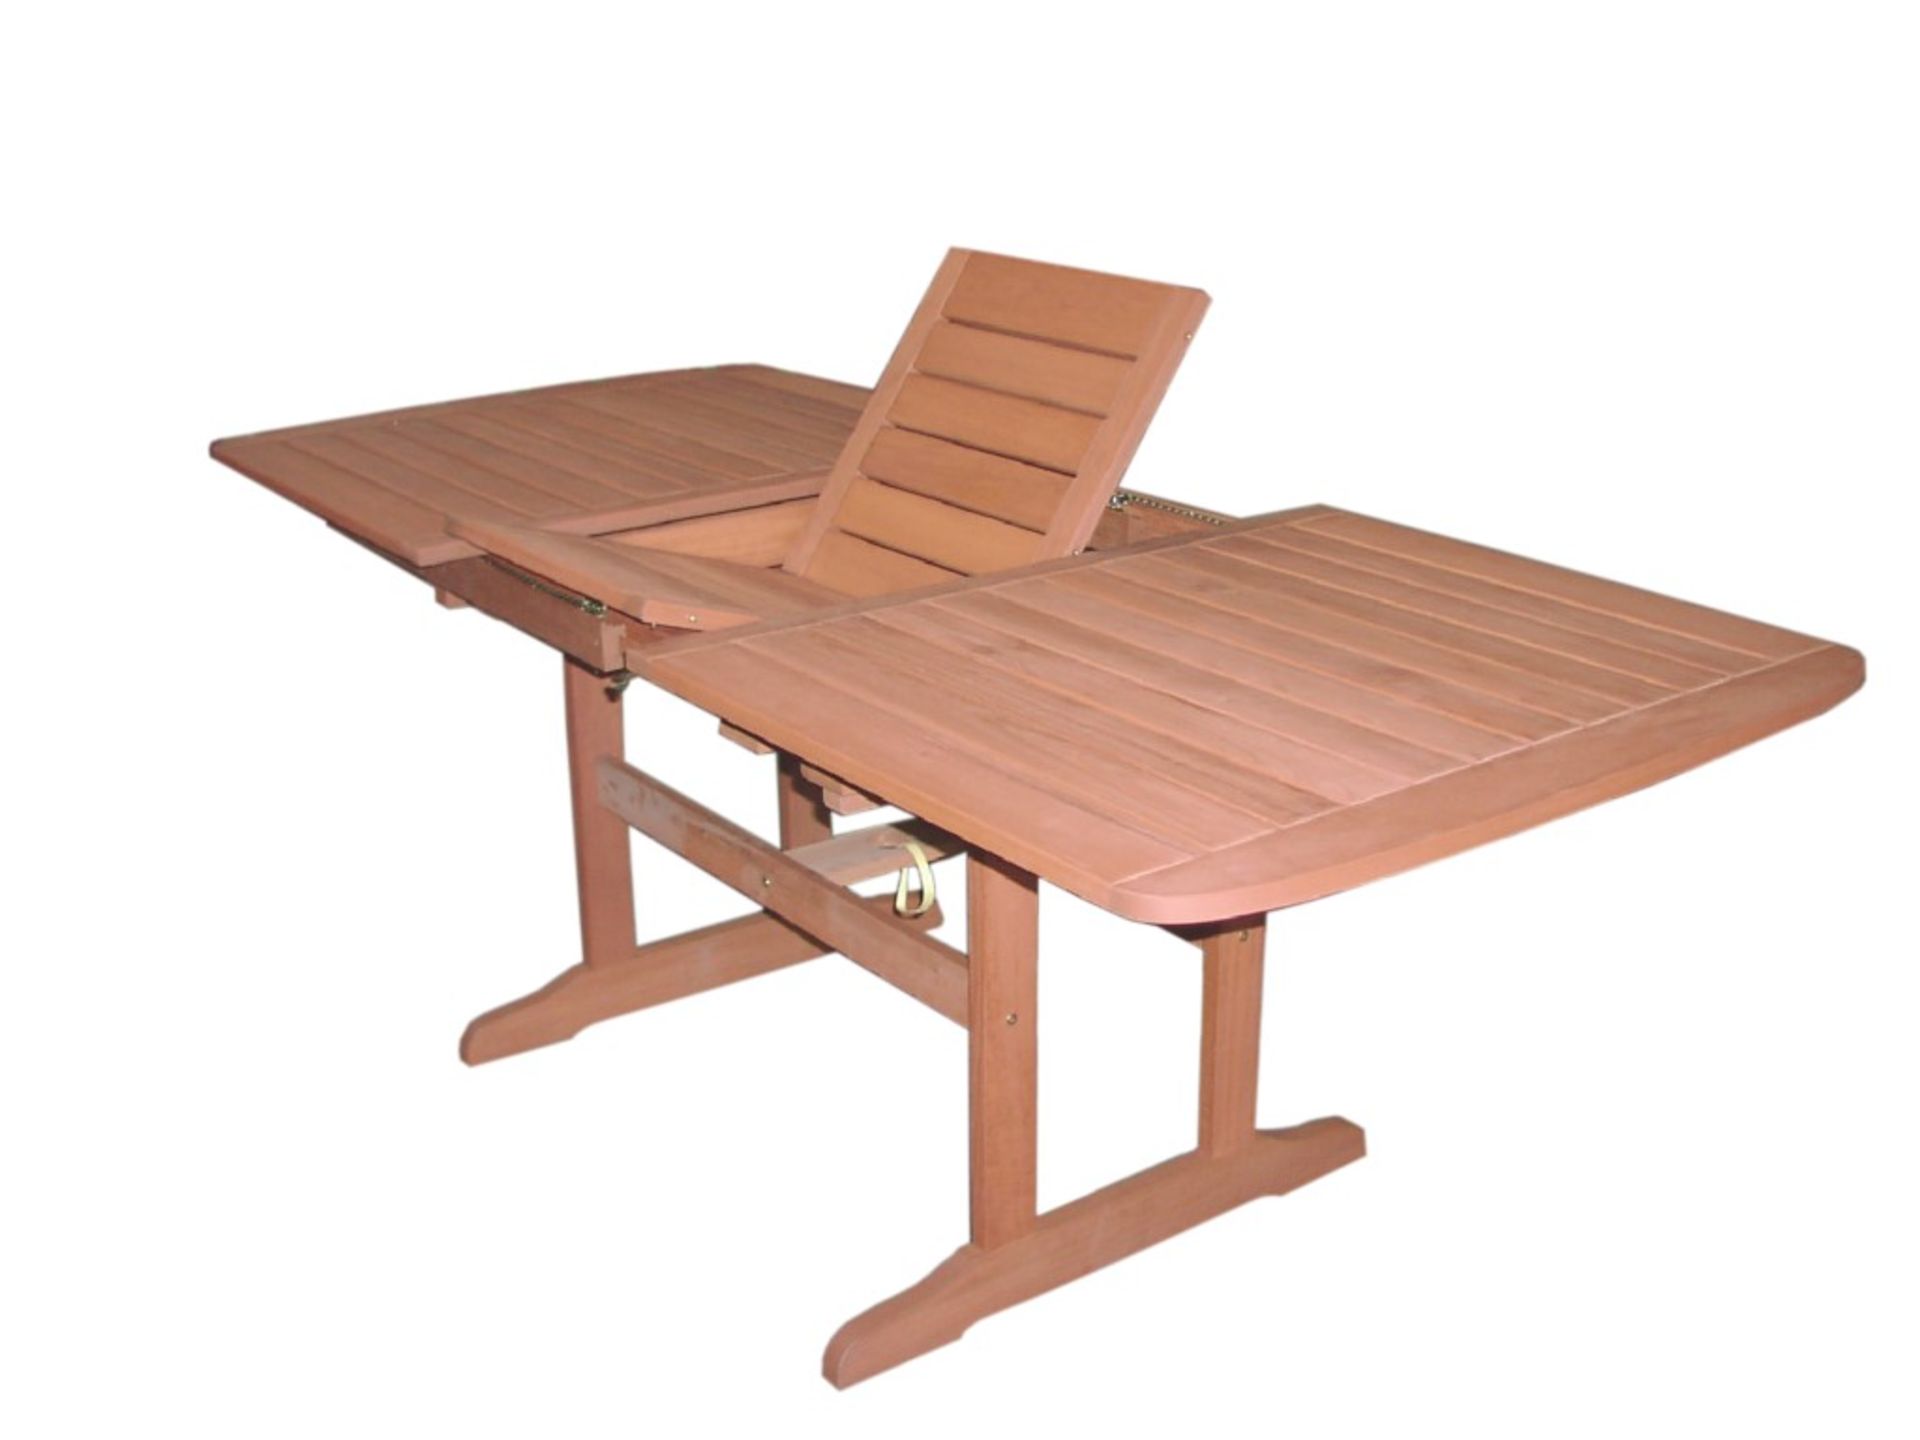 5-Piece Garden Furniture Set  - Includes 1 x Extending Rectangular Garden Table & 4 x Reclining